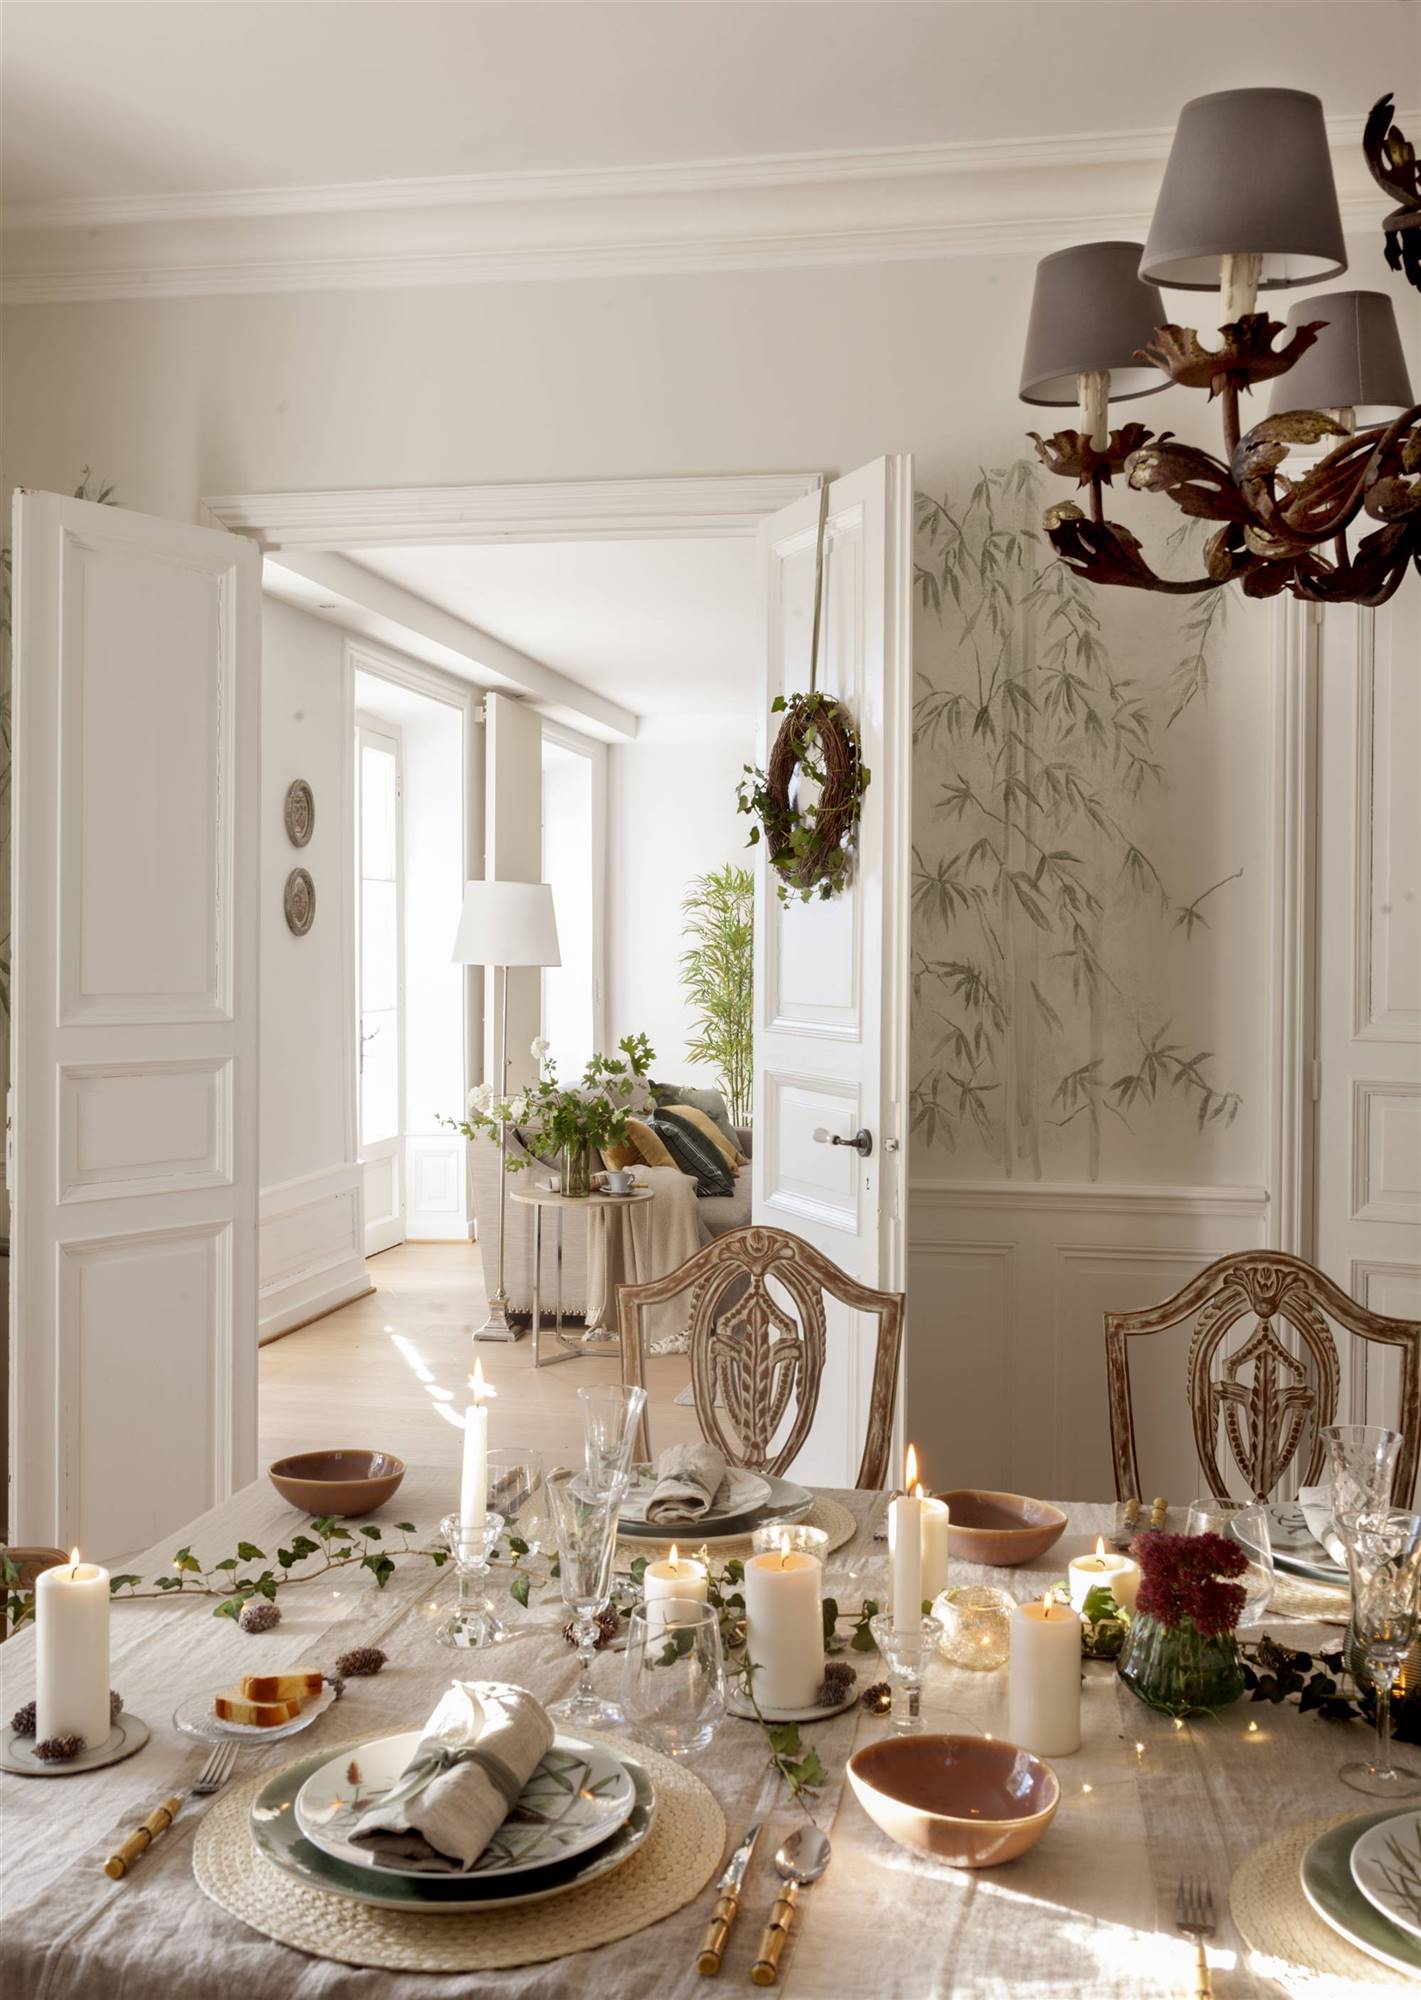 Comedor con puerta blanca decorada con accesorios de Navidad.